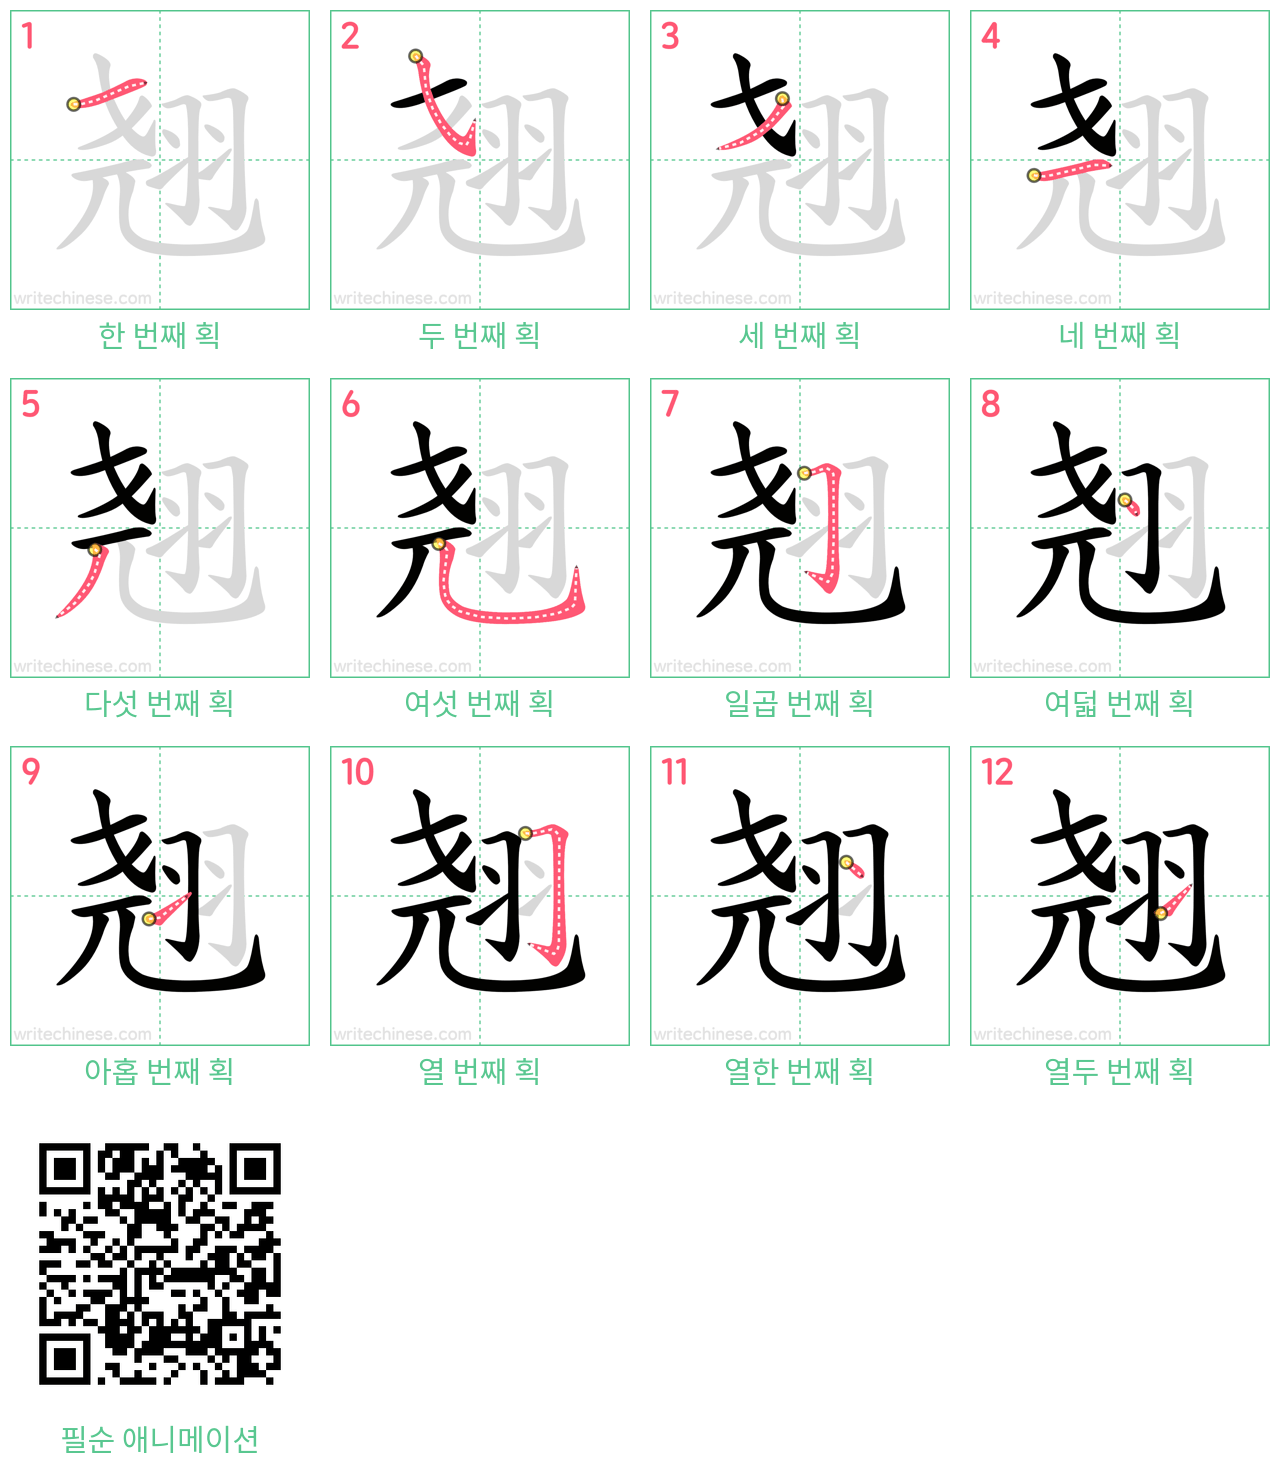 翘 step-by-step stroke order diagrams